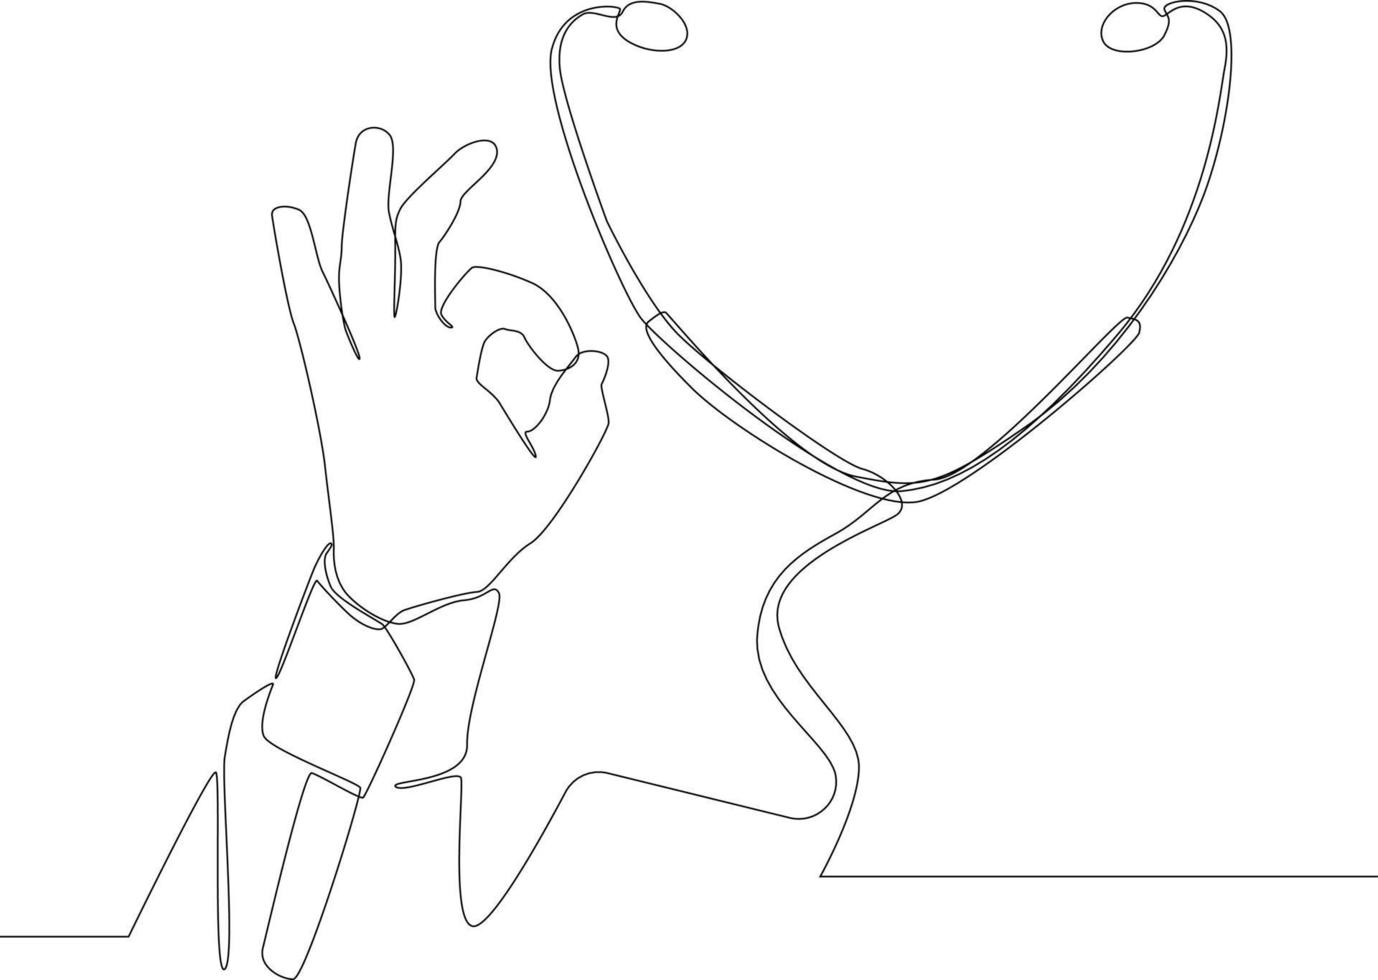 eenvoudige doorlopende lijntekening stethoscoop en gebaren goedkeuring expressie doen oke symbool met vingers ondertekenen geïsoleerd op een witte achtergrond. symbool geneeskunde. vector illustratie